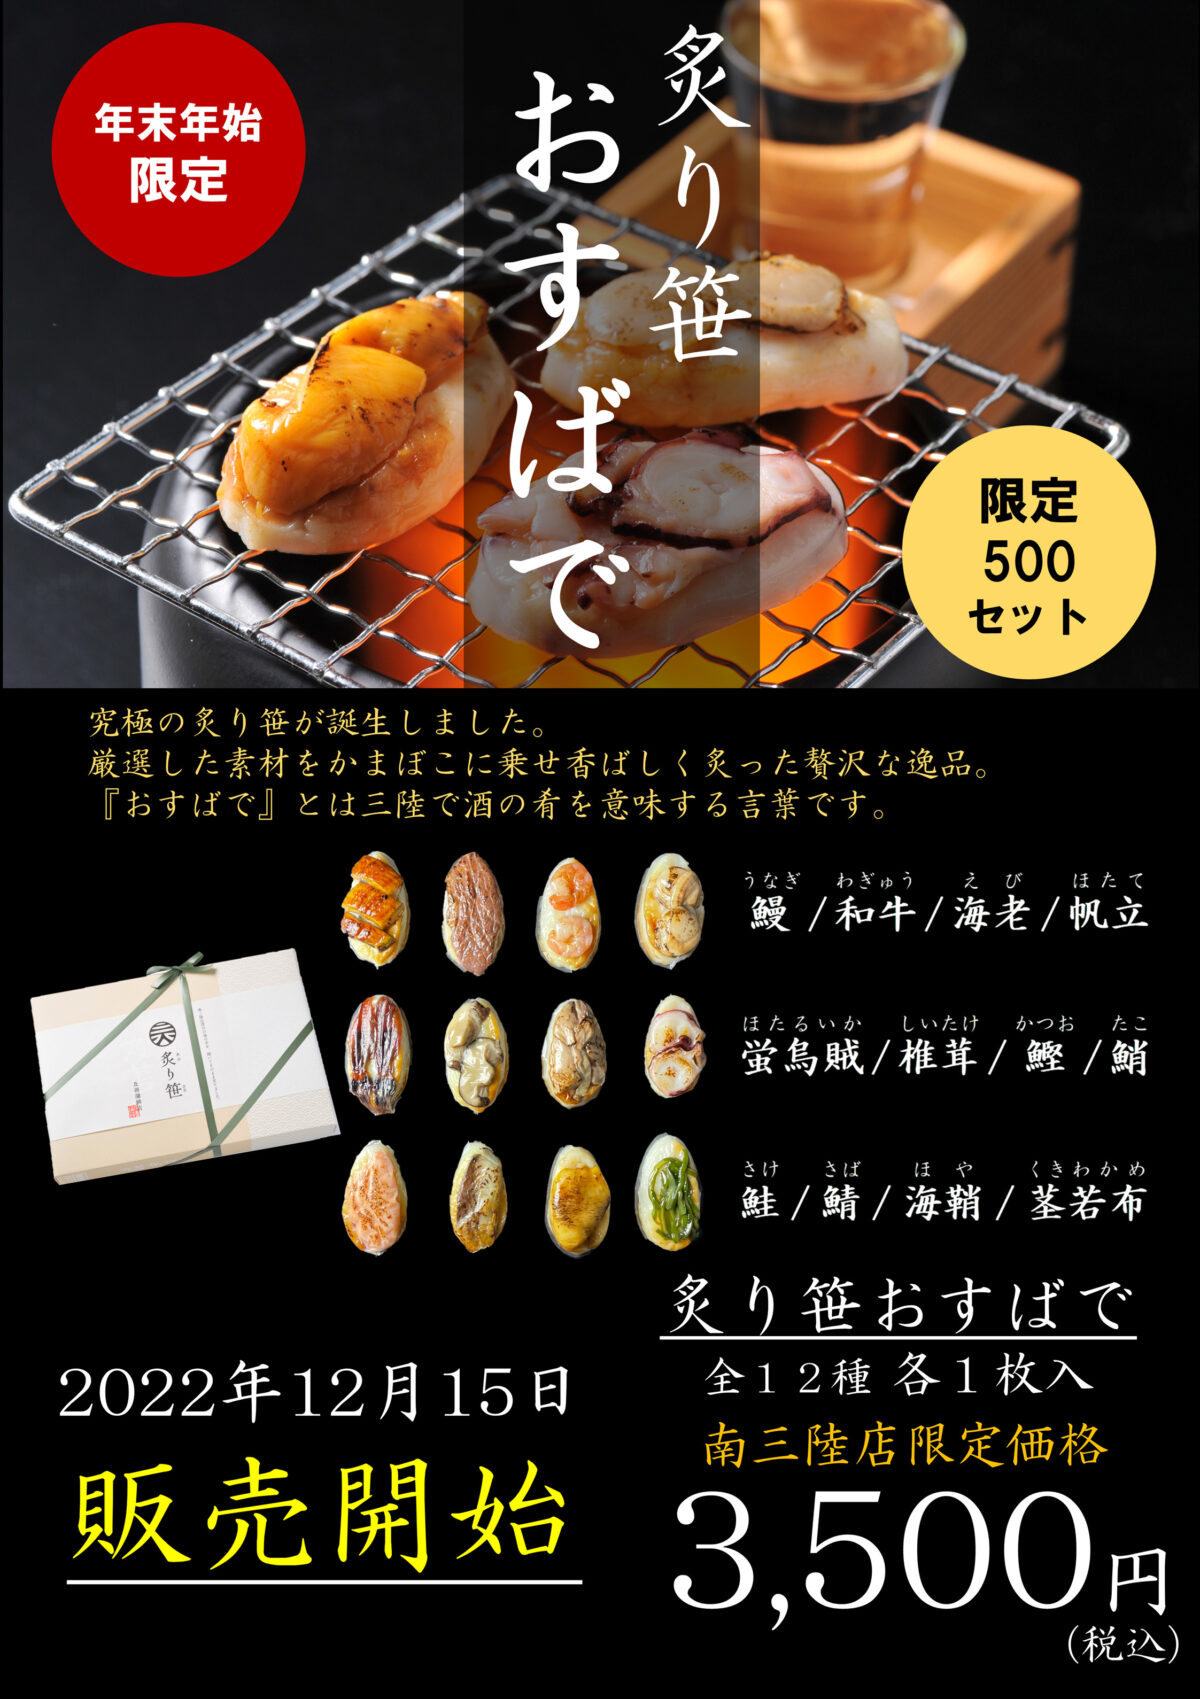 ”及善蒲鉾店”年末年始限定の新商品『炙り笹おすばて』が販売開始！